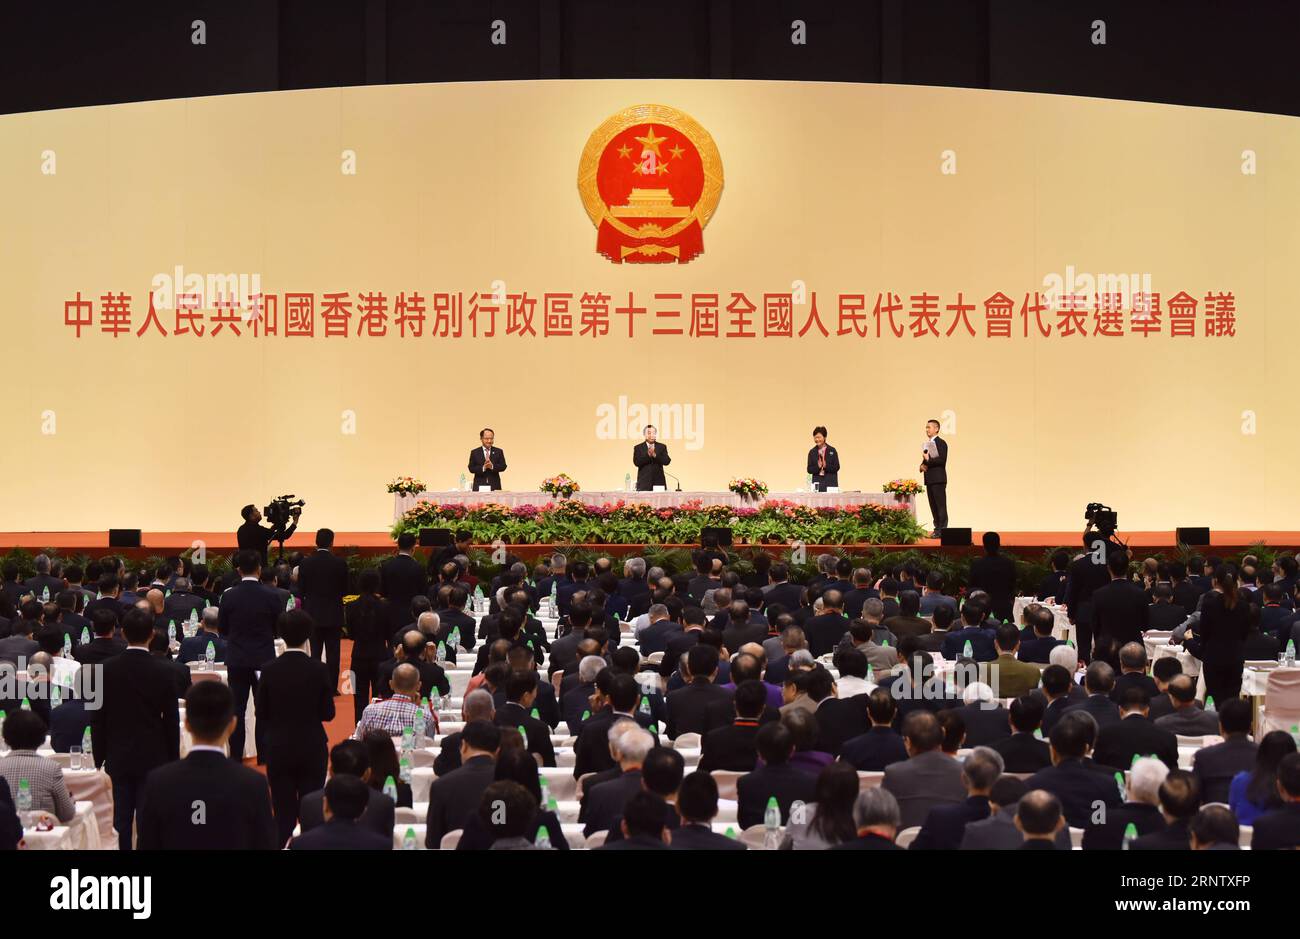 (171122) -- HONGKONG, 22. November 2017 -- stellvertretender Vorsitzender und Generalsekretär des Ständigen Ausschusses des Nationalen Volkskongresses (NPC) Wang Chen führt den Vorsitz über die erste Plenartagung der Konferenz zur Wahl der Abgeordneten der Sonderverwaltungsregion Hongkong (HKSAR) zum 13. NPC in Hongkong, Südchina, 22. November 2017. Auf der Plenartagung, an der 1.462 Mitglieder der Wahlkonferenz teilnahmen, wurde ein 19-köpfiges Präsidium gewählt, das den Vorsitz über die künftigen Sitzungen der Wahlkonferenz führen wird. )(mcg) CHINA-HONG KONG-NPC-ELECTION (CN) WangxXi PUBLICATIONxNOTxINxCHN Stockfoto